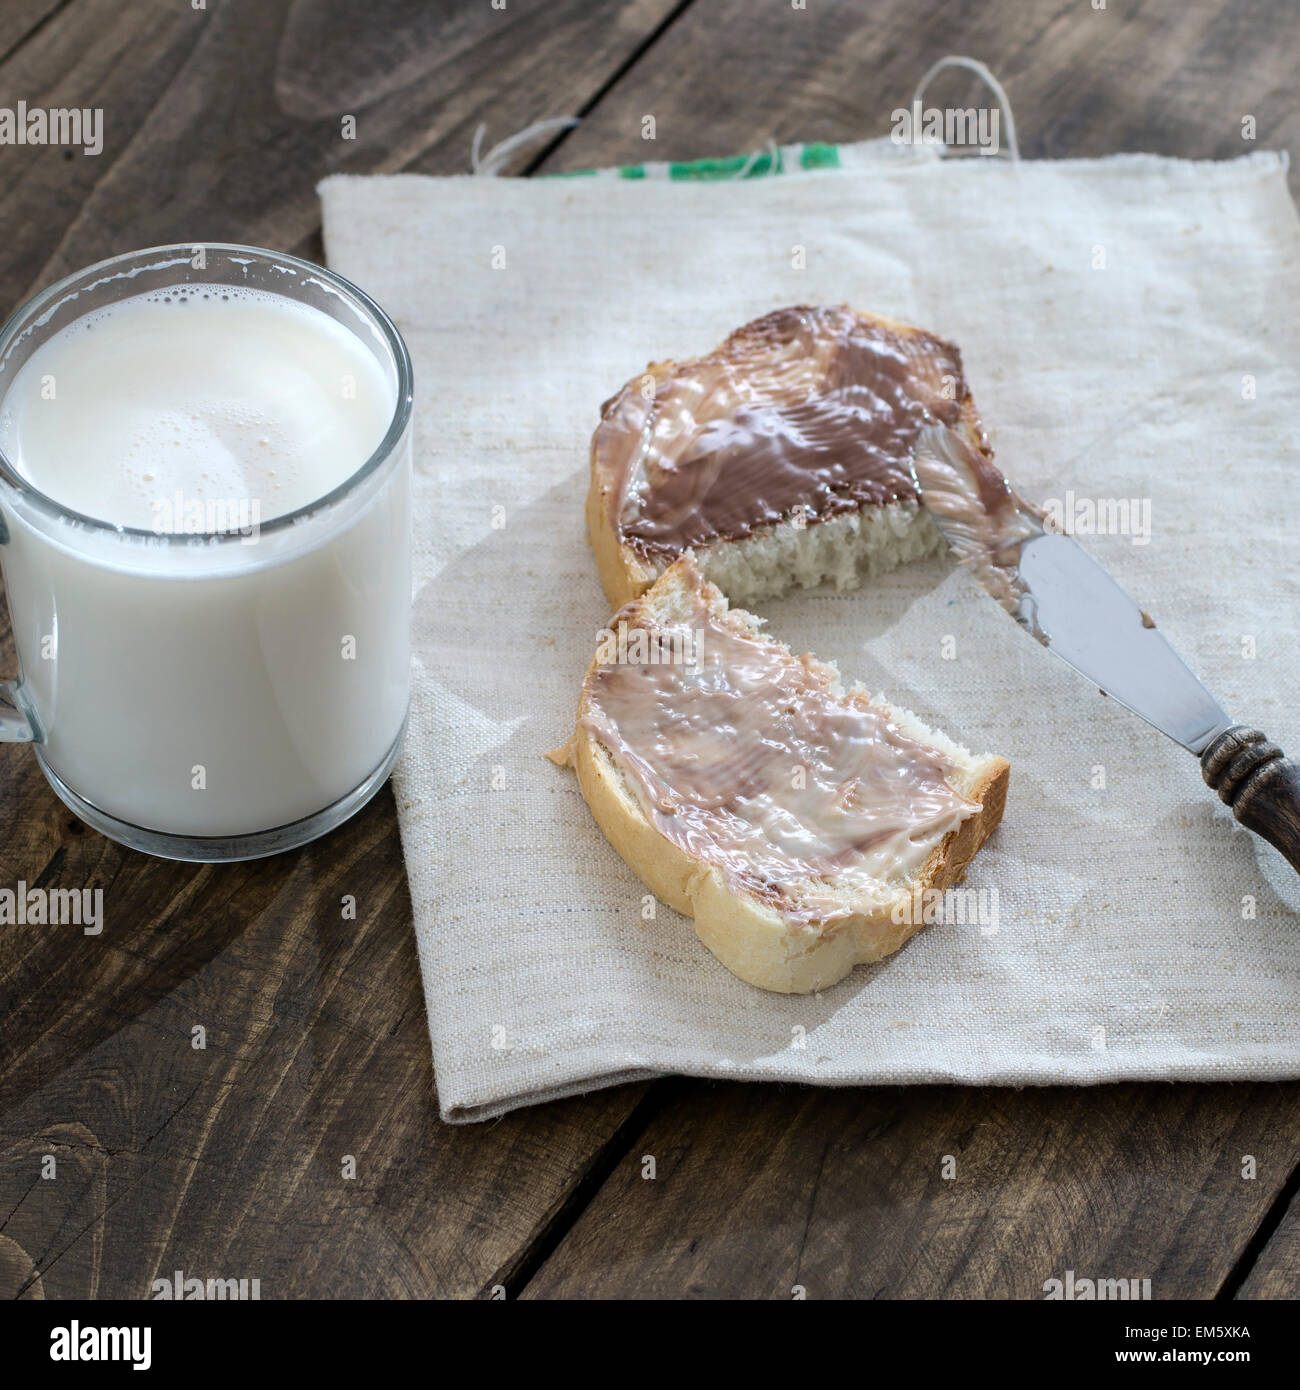 Tranche de pain avec la crème au chocolat et le lait sur la table Banque D'Images